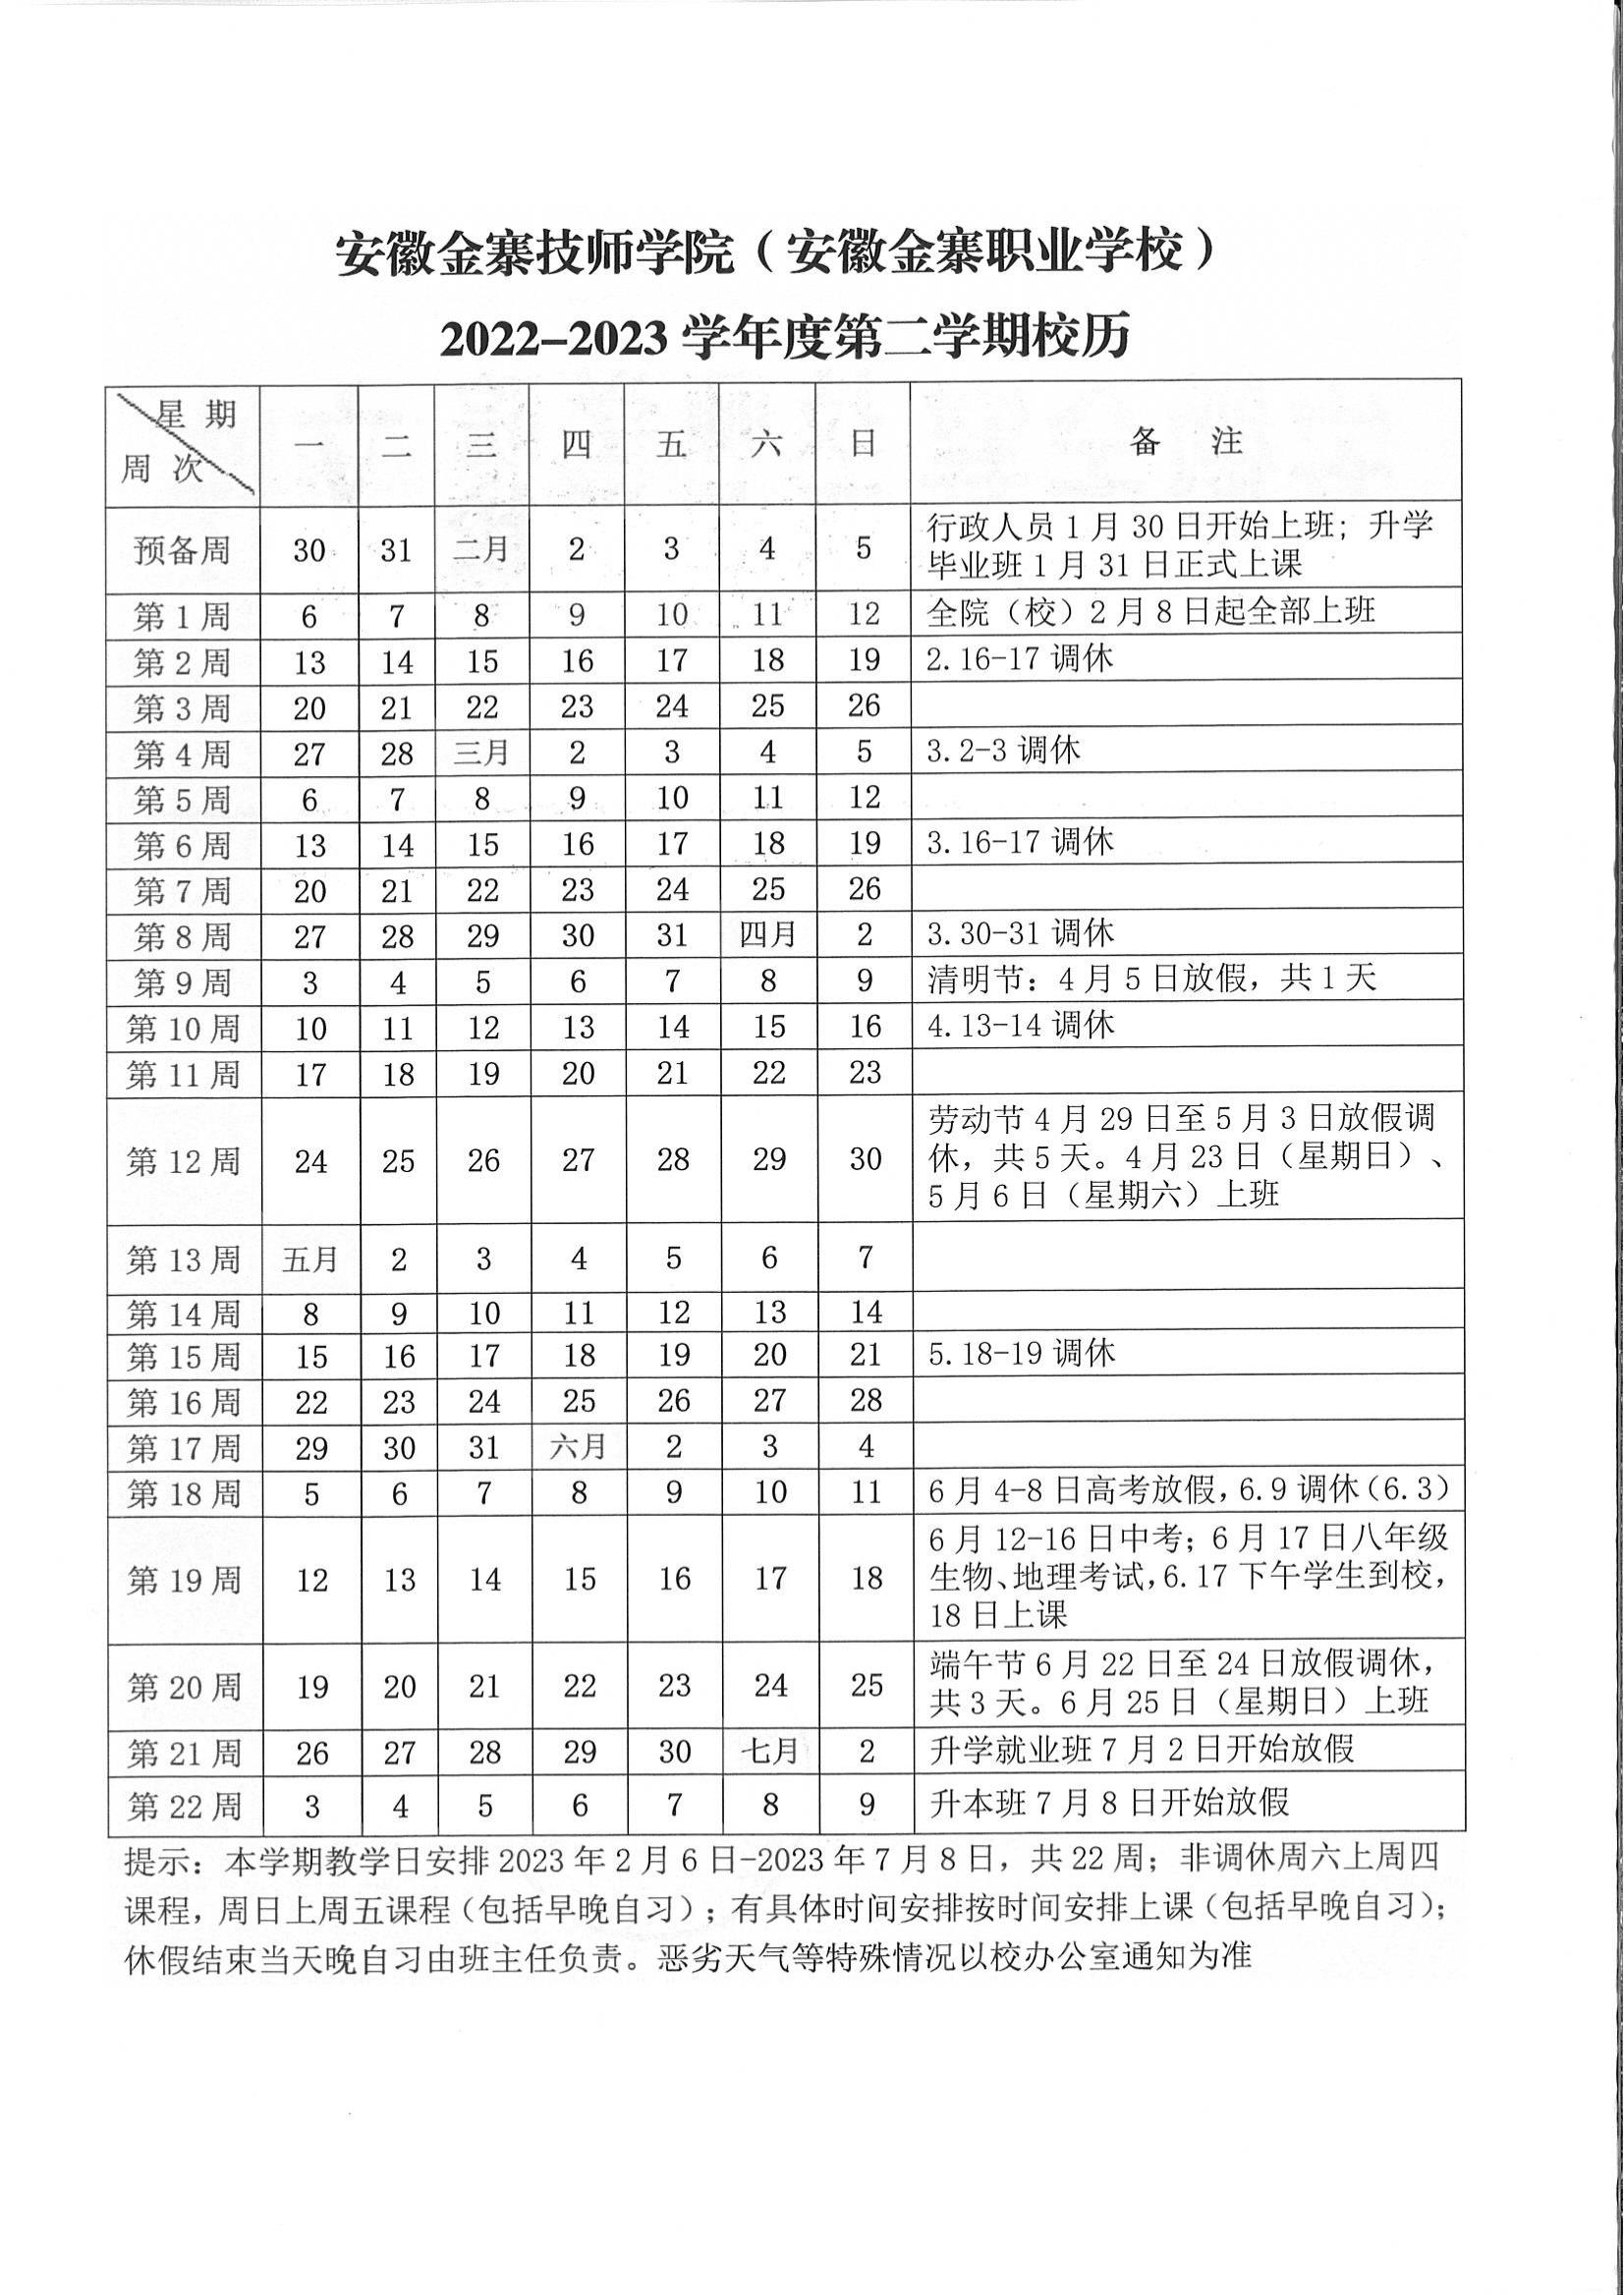 金技10号2022-2023学年度第二学期校历_01.jpg